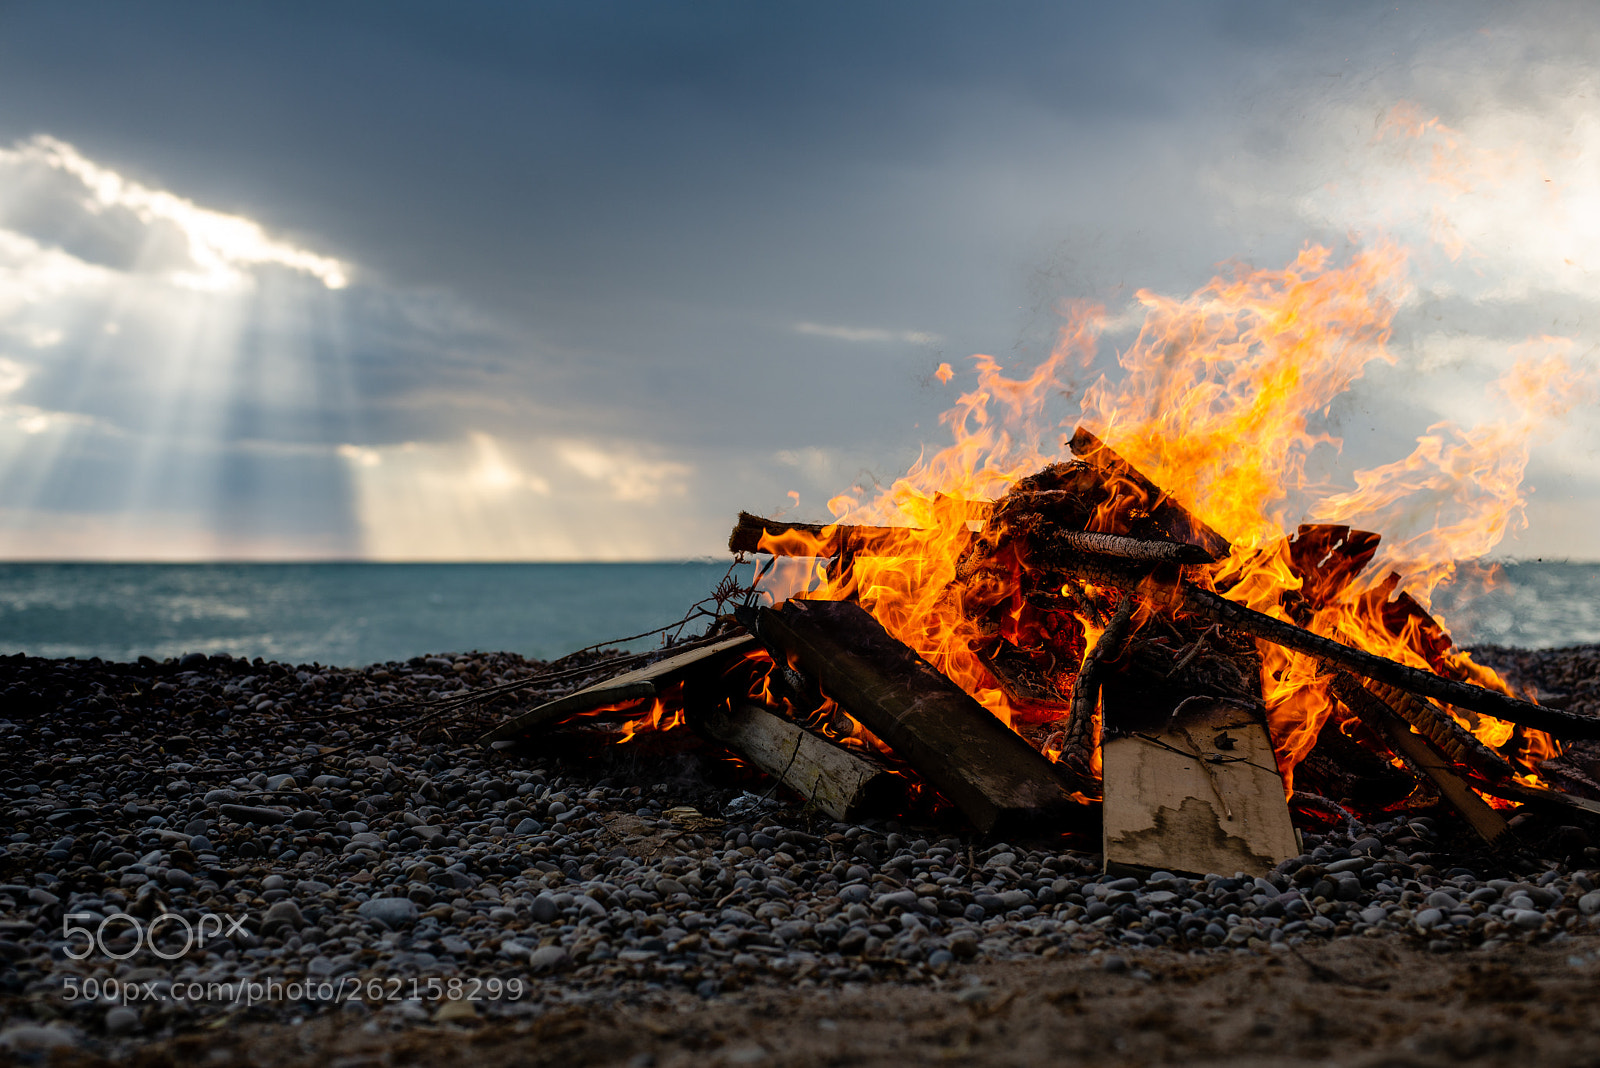 Nikon D610 sample photo. Lake side bonfire photography